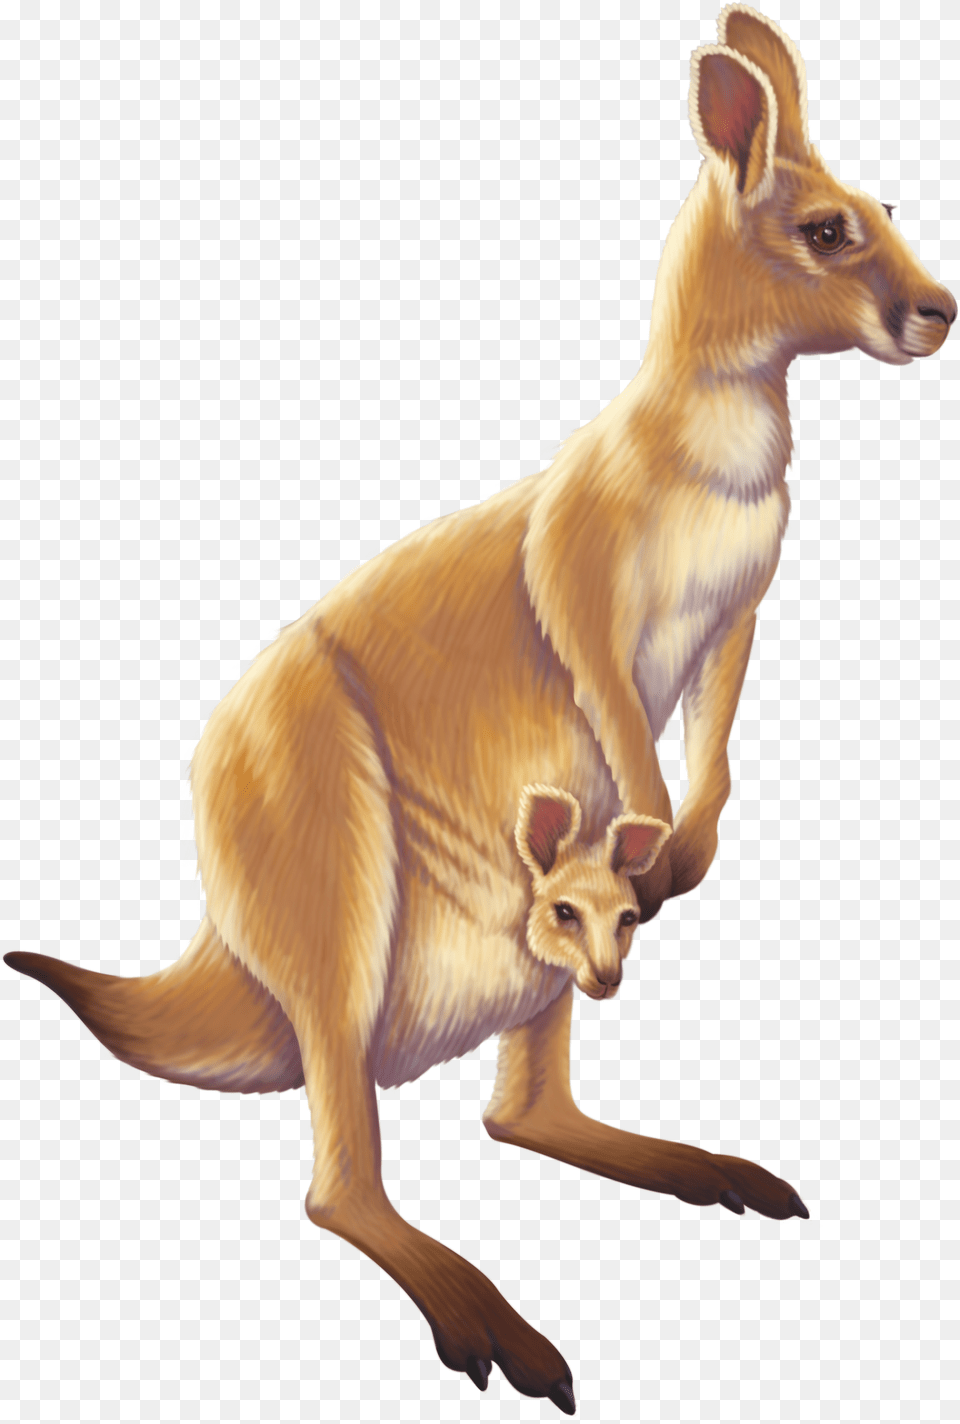 Download Kangaroo Australia Animal Free Transparent Hd Animals, Antelope, Mammal, Wildlife Png Image